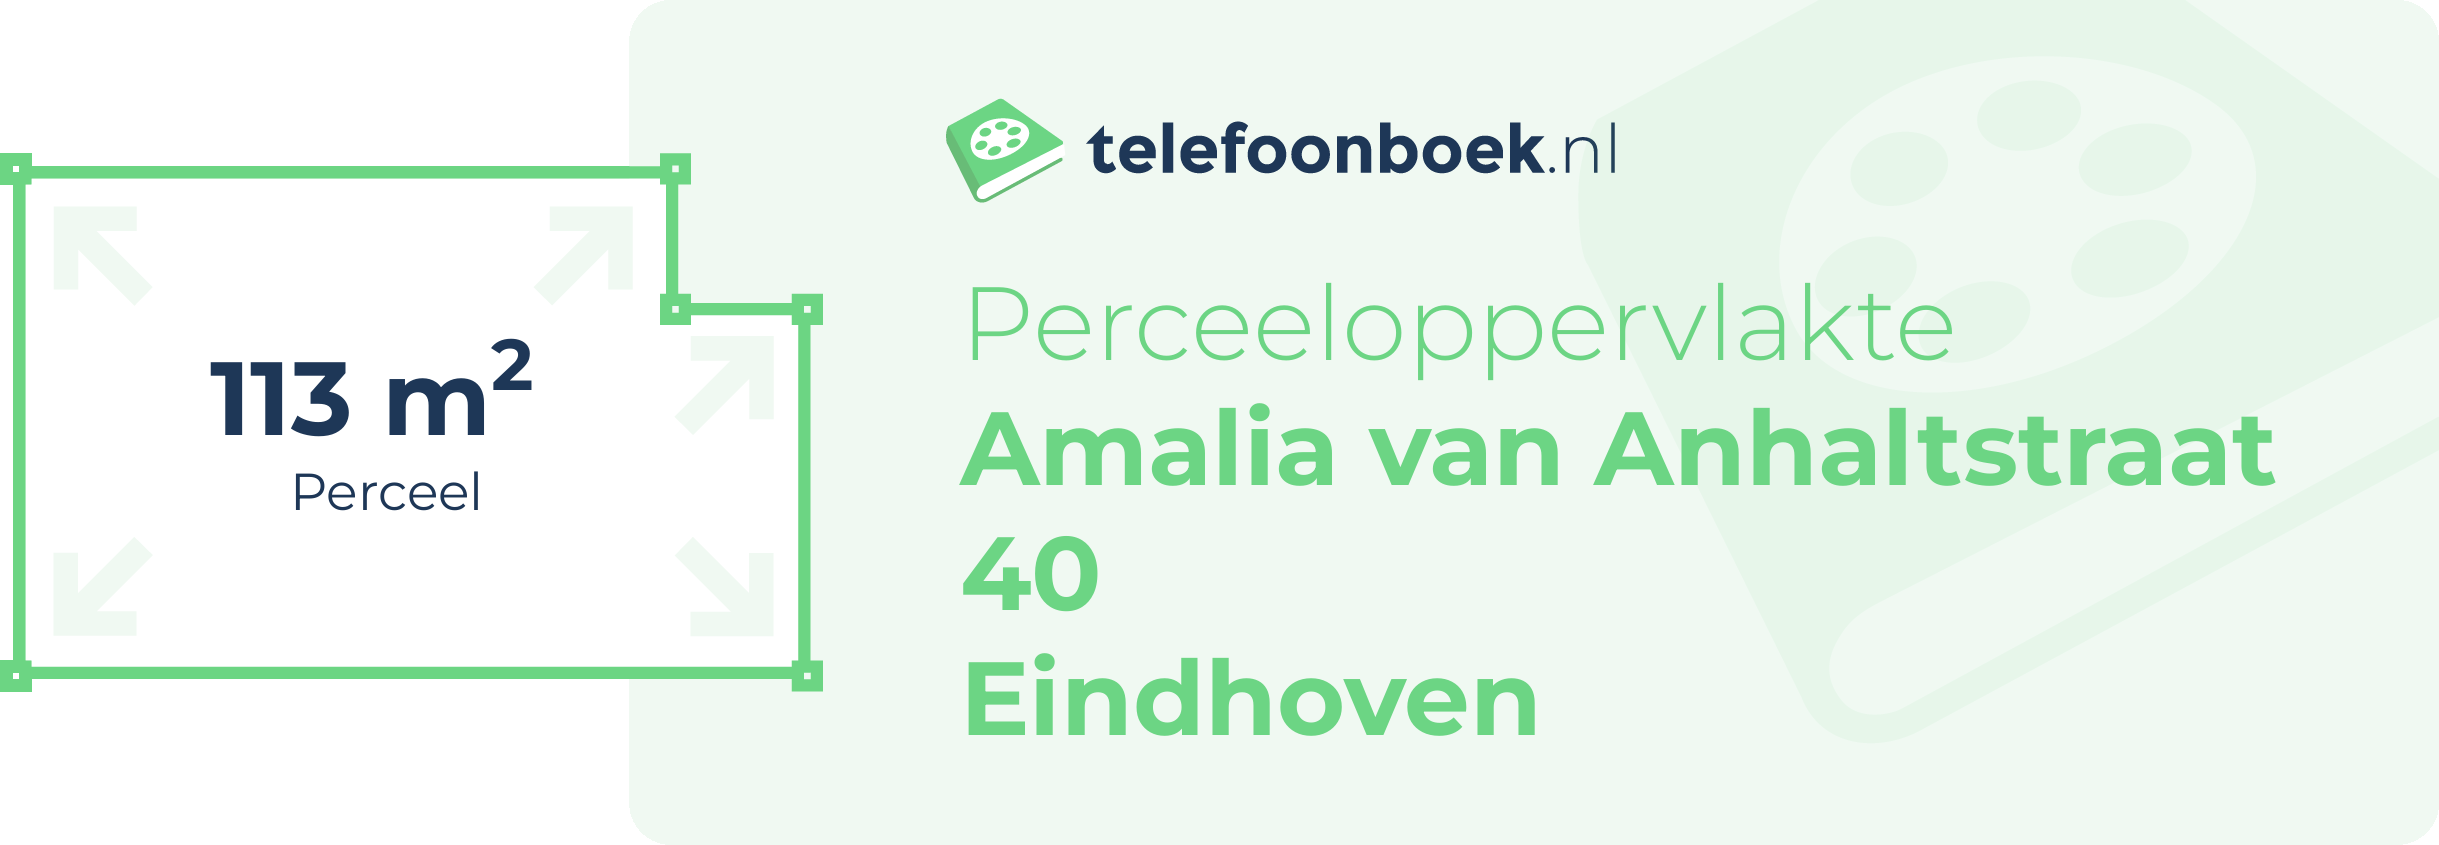 Perceeloppervlakte Amalia Van Anhaltstraat 40 Eindhoven